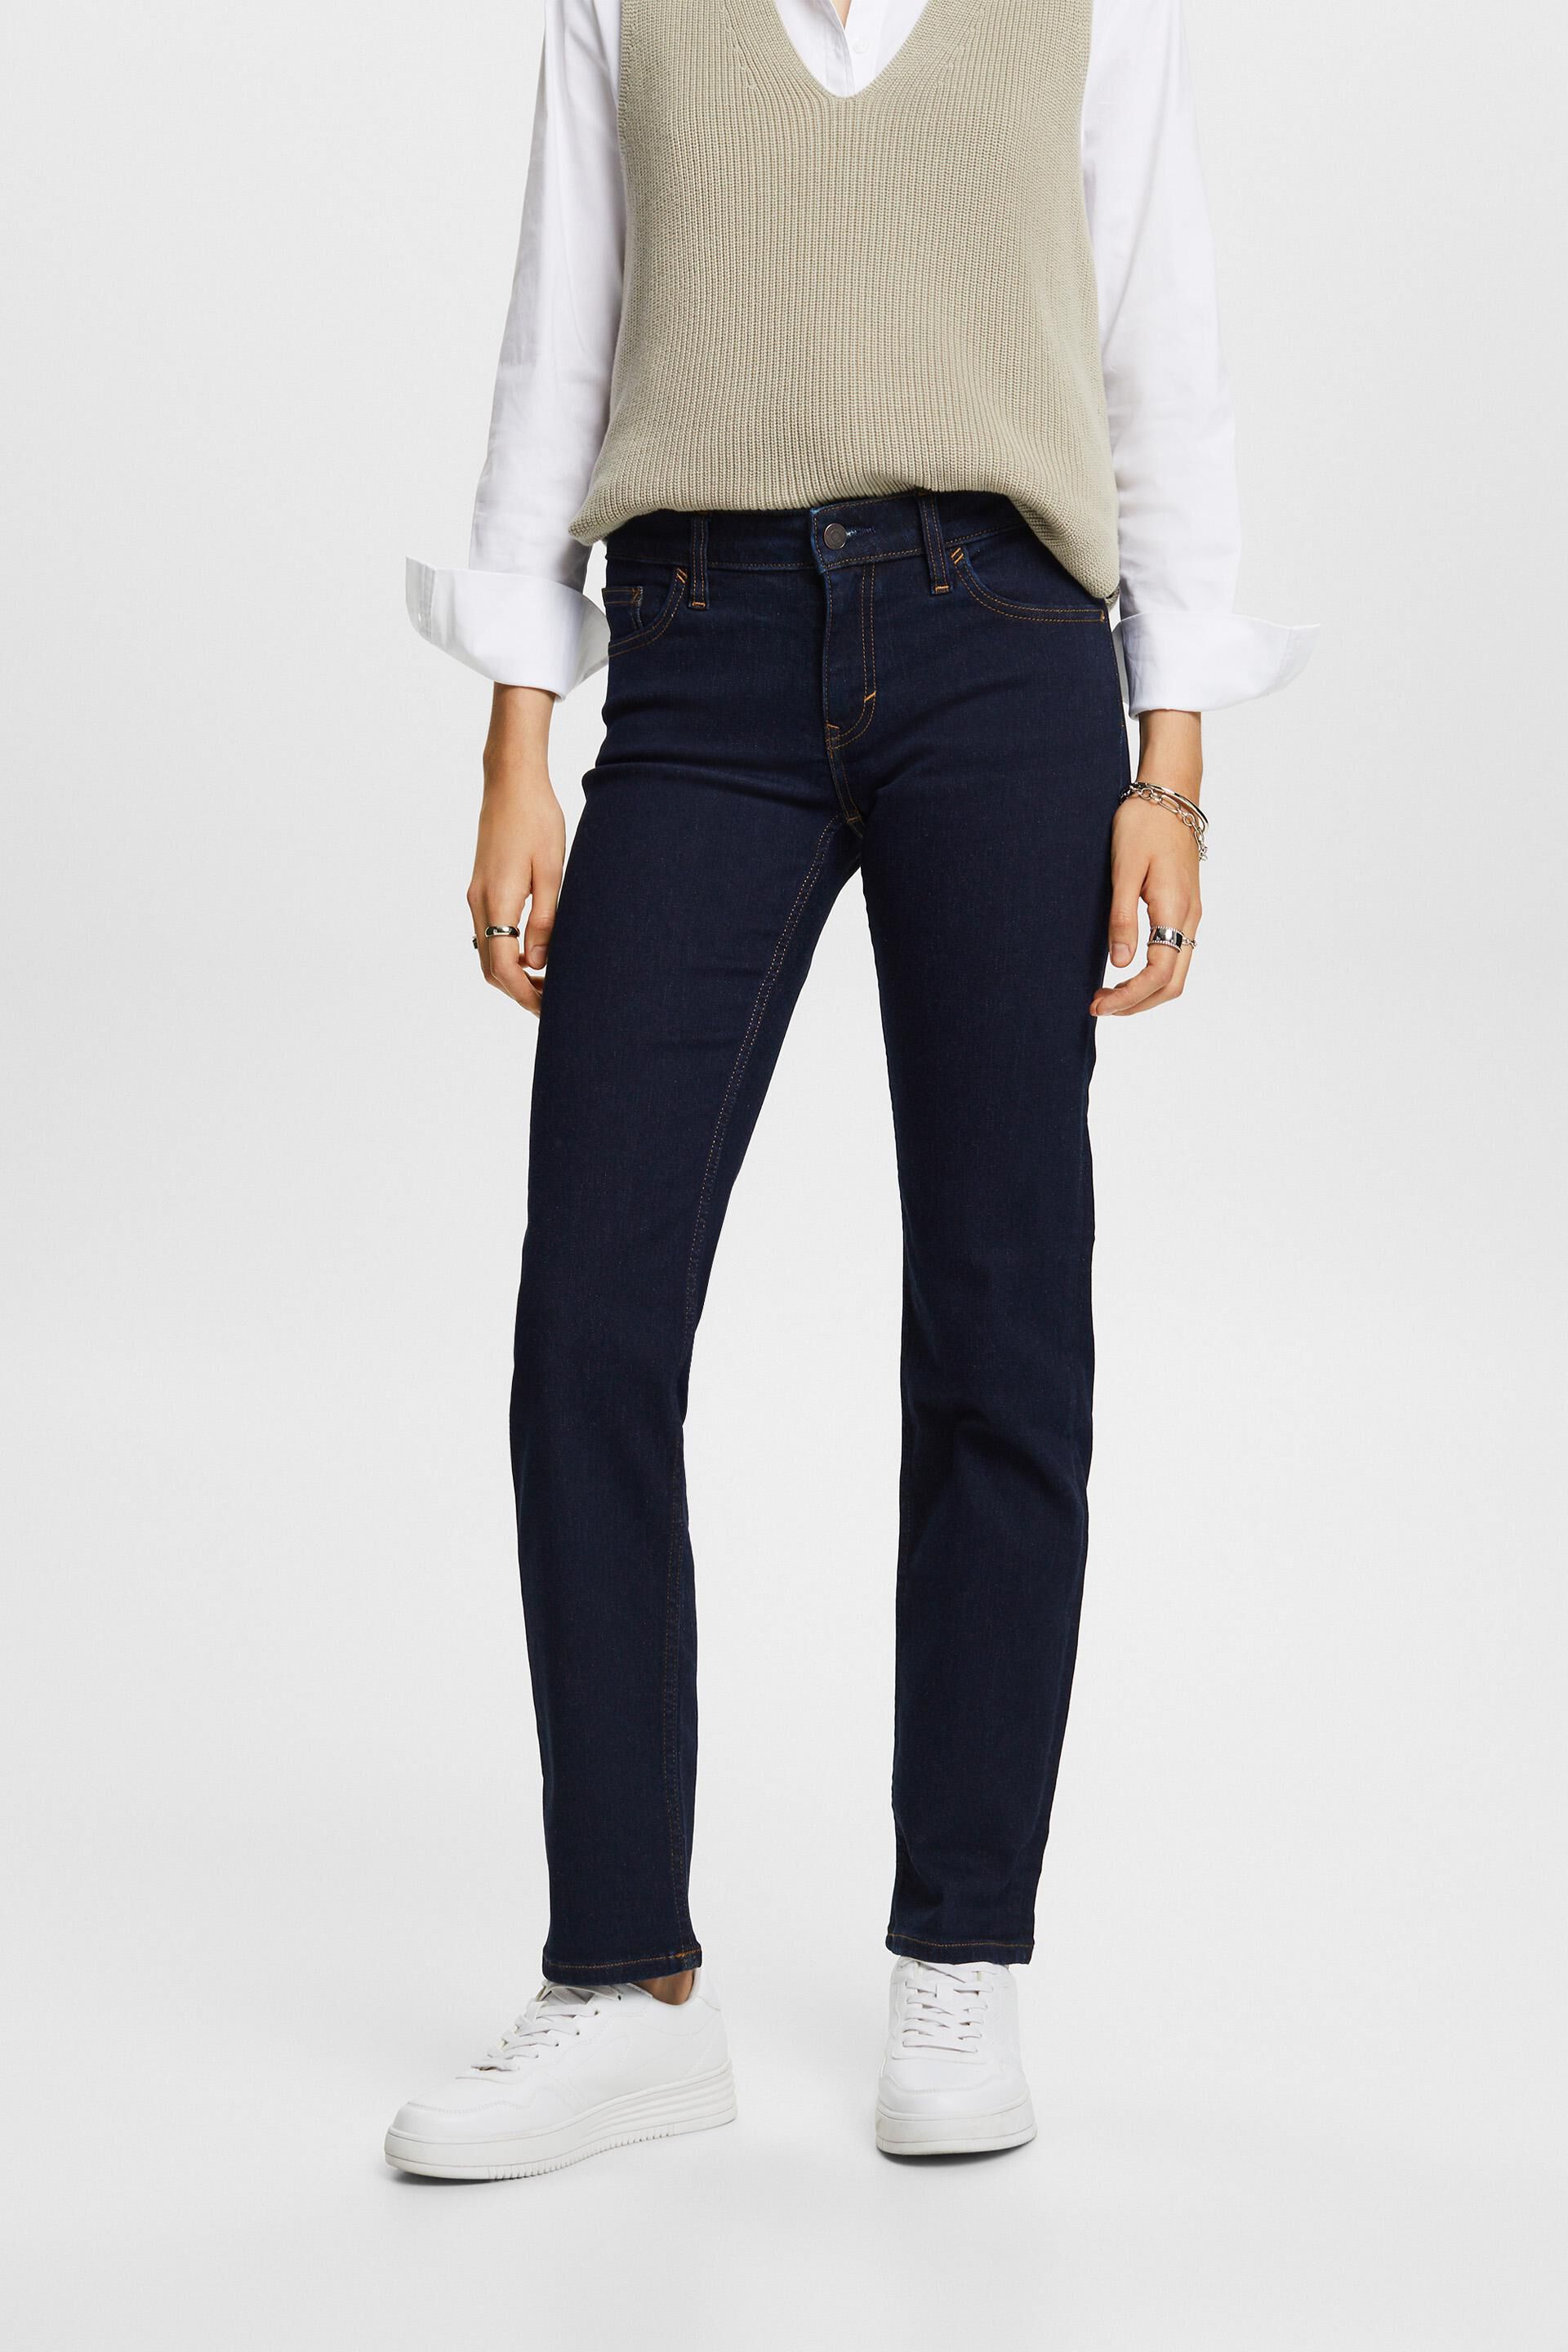 Esprit stretch cotton blend jeans, Straight leg